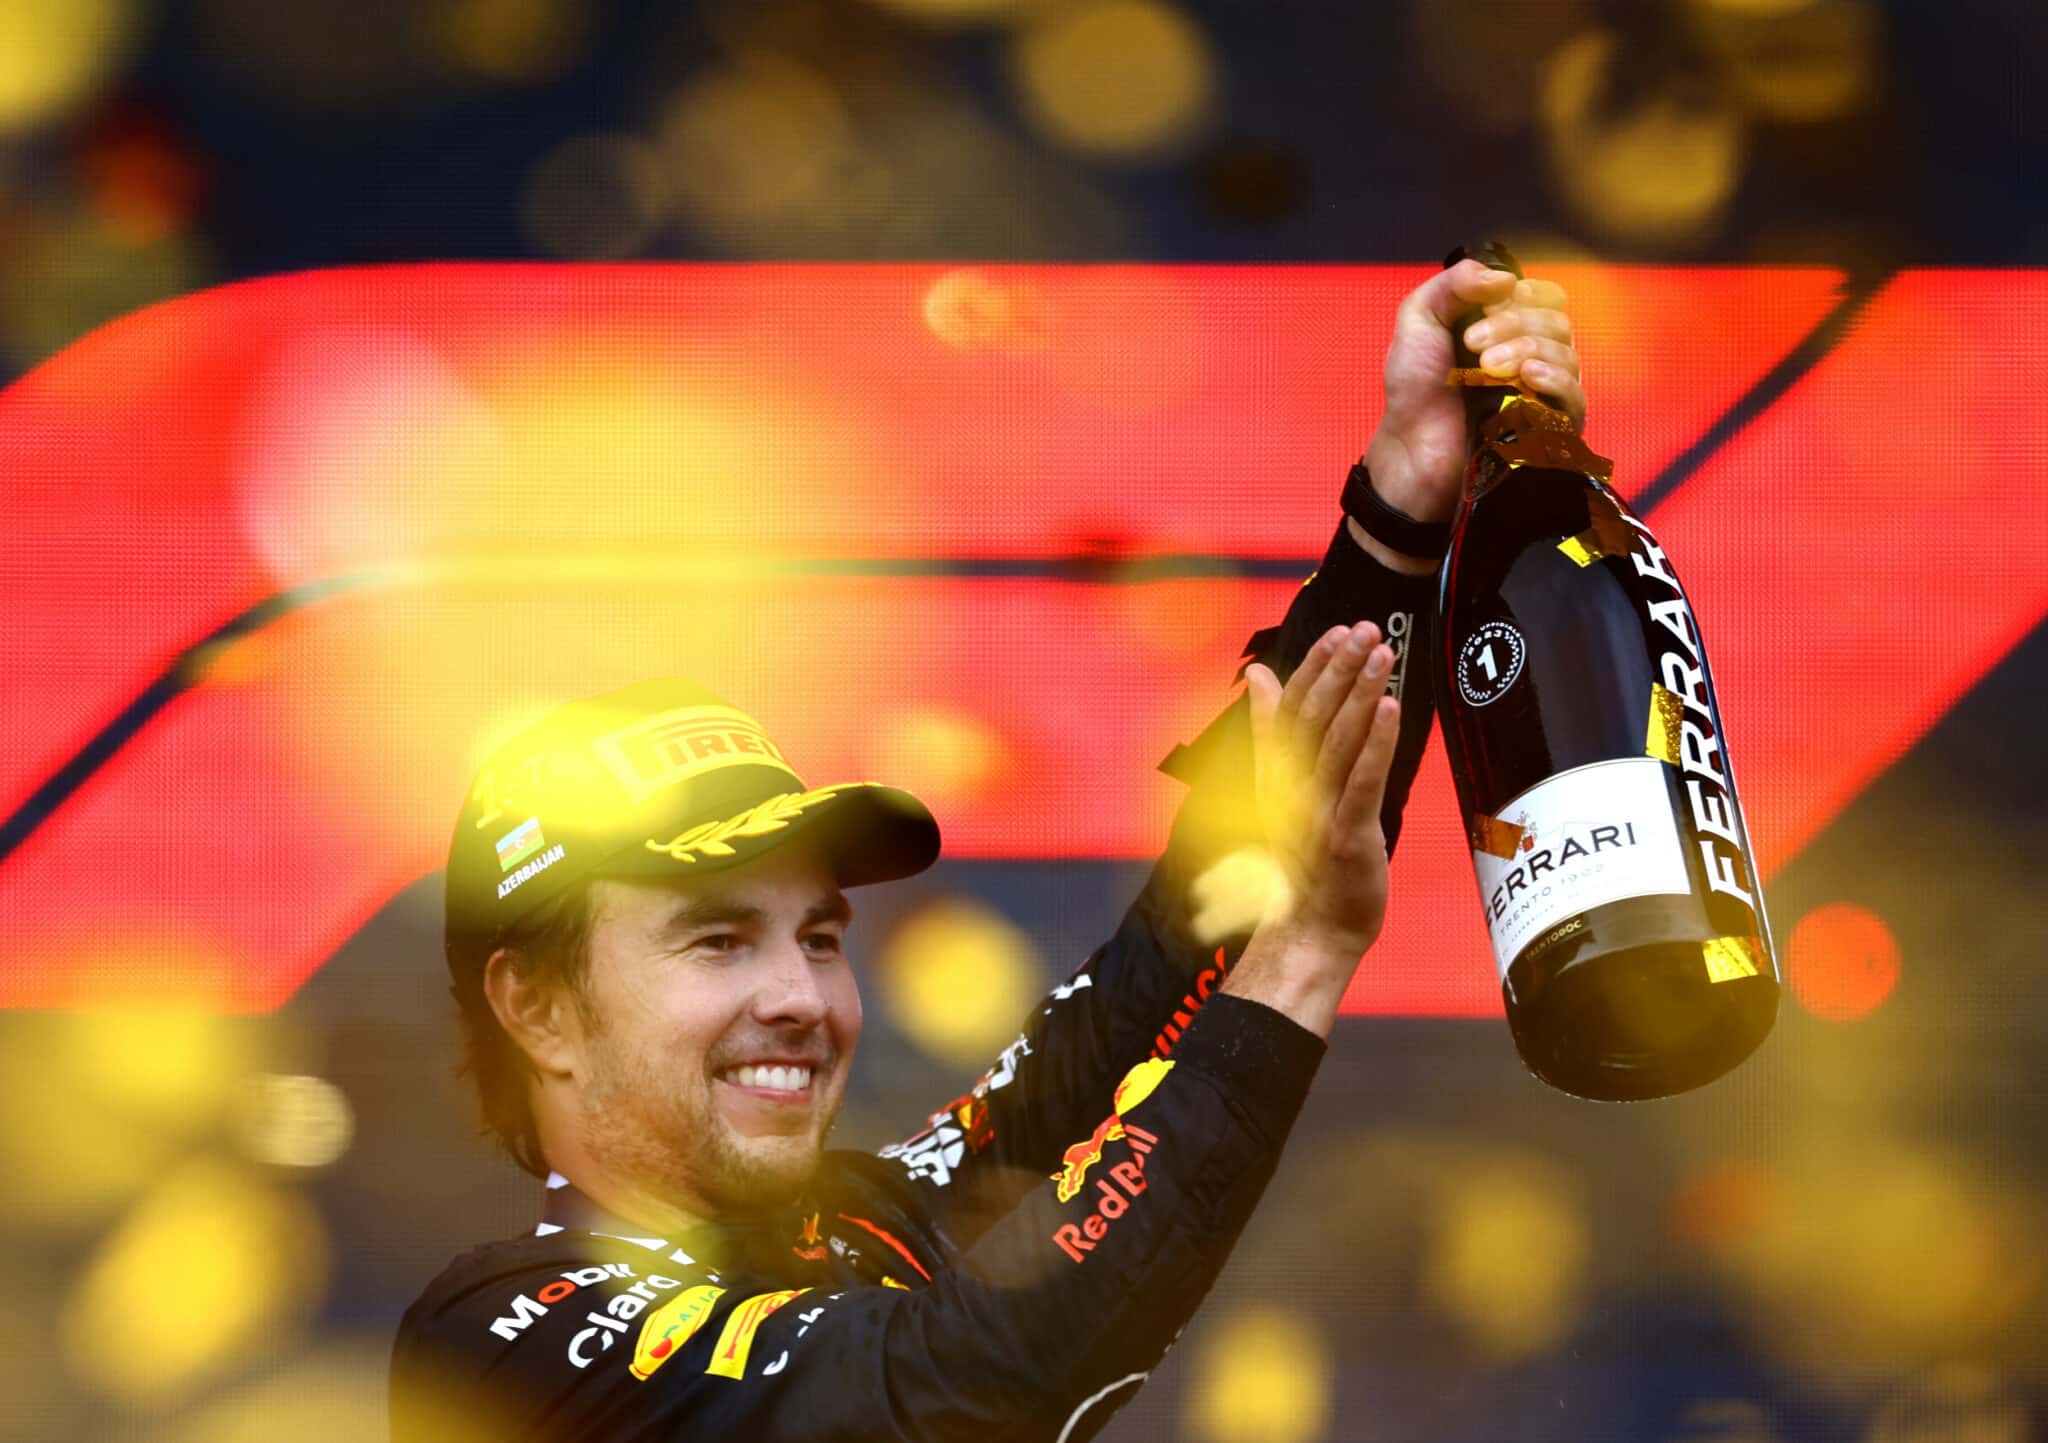 - Kan Sergio Perez dit jaar het F1-kampioenschap winnen?